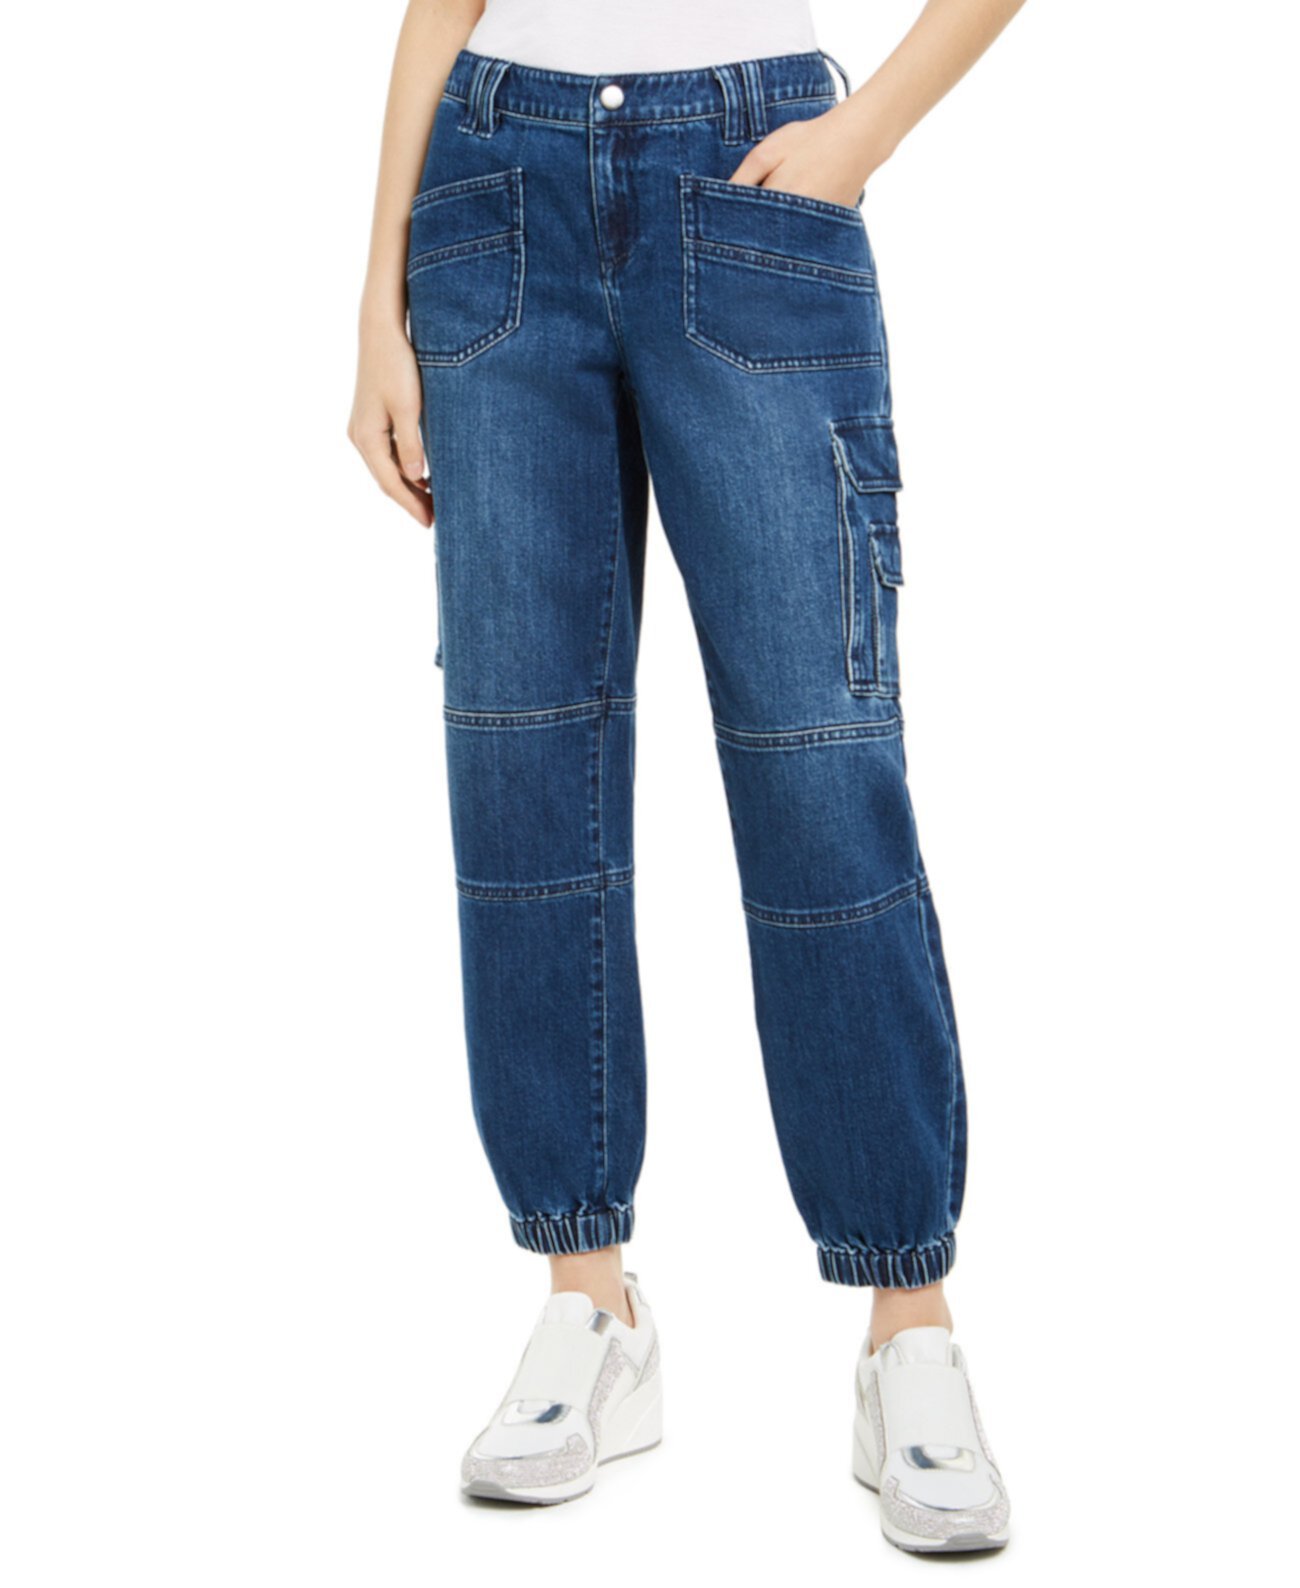 Джинсовые джинсы Jogger с логотипом Cargo Cargo, созданные для Macy's INC International Concepts